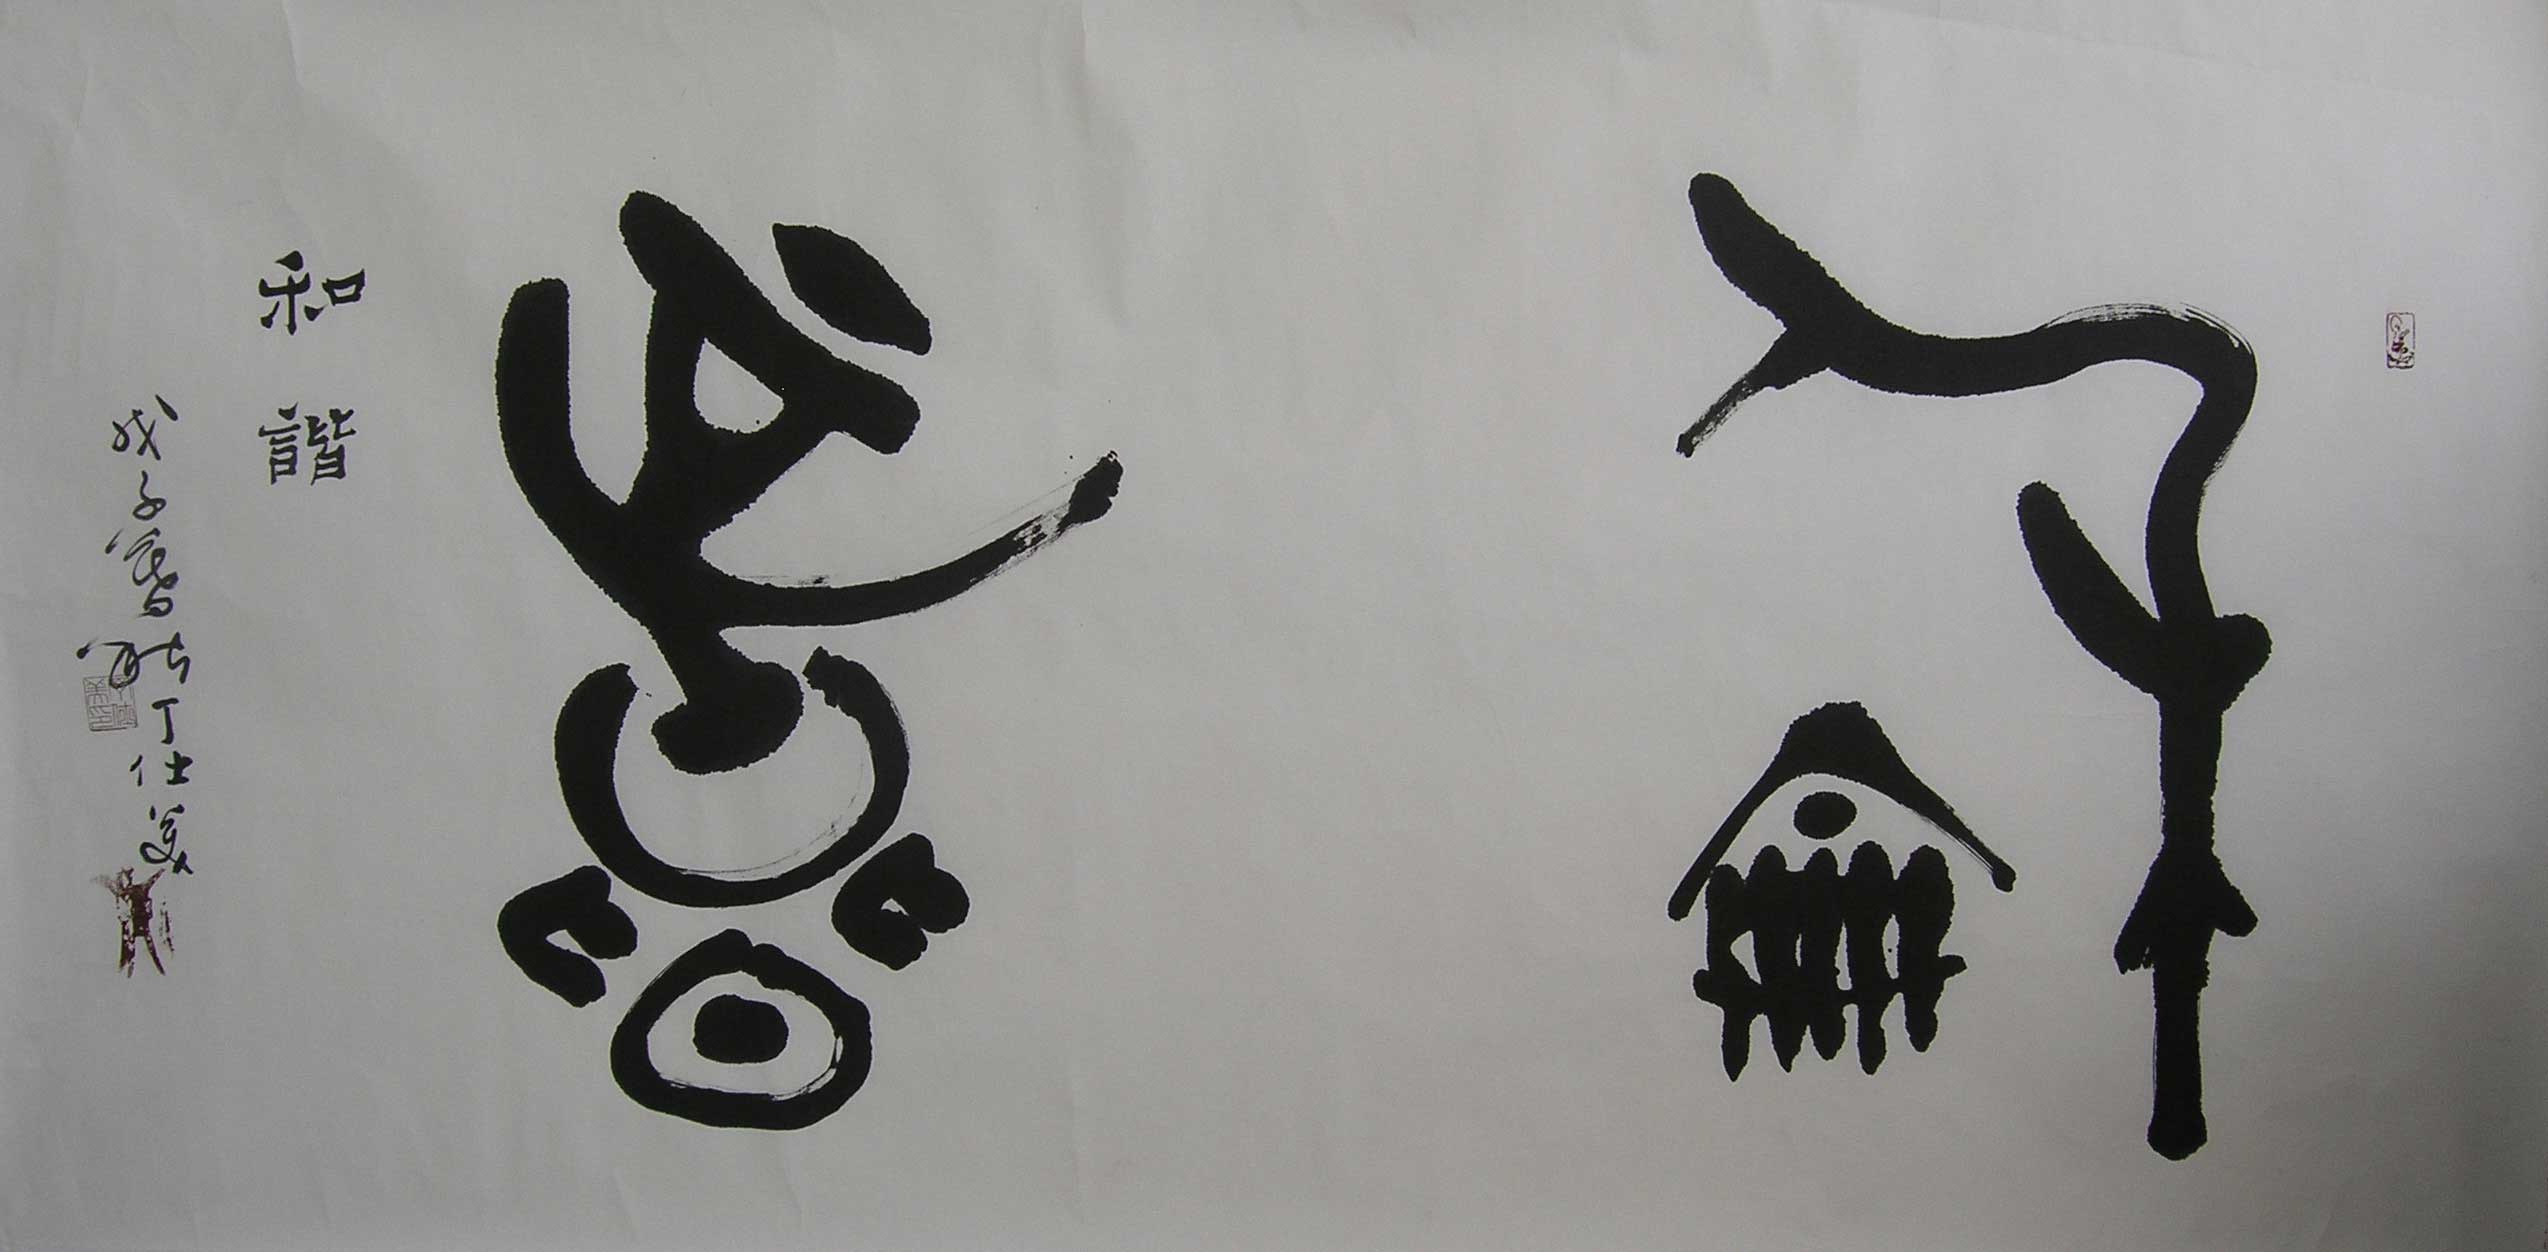 丁仕美大篆书法横幅，释文：“和谐”